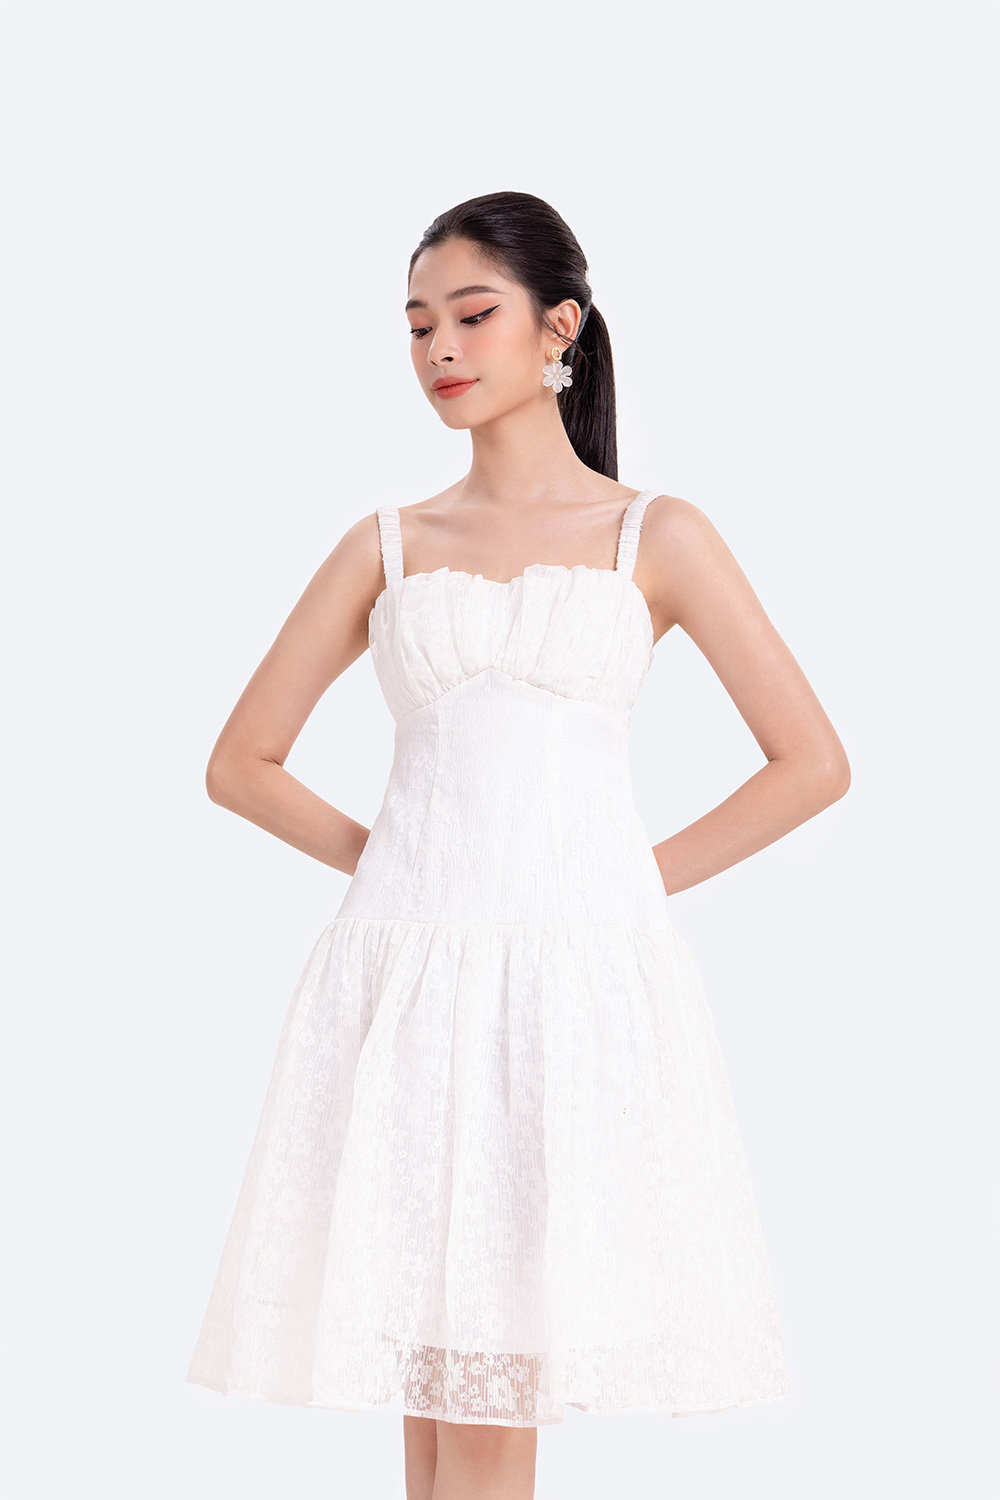 Đầm ren trắng hai dây cut-out lưng HL21-35 | Thời trang công sở ...